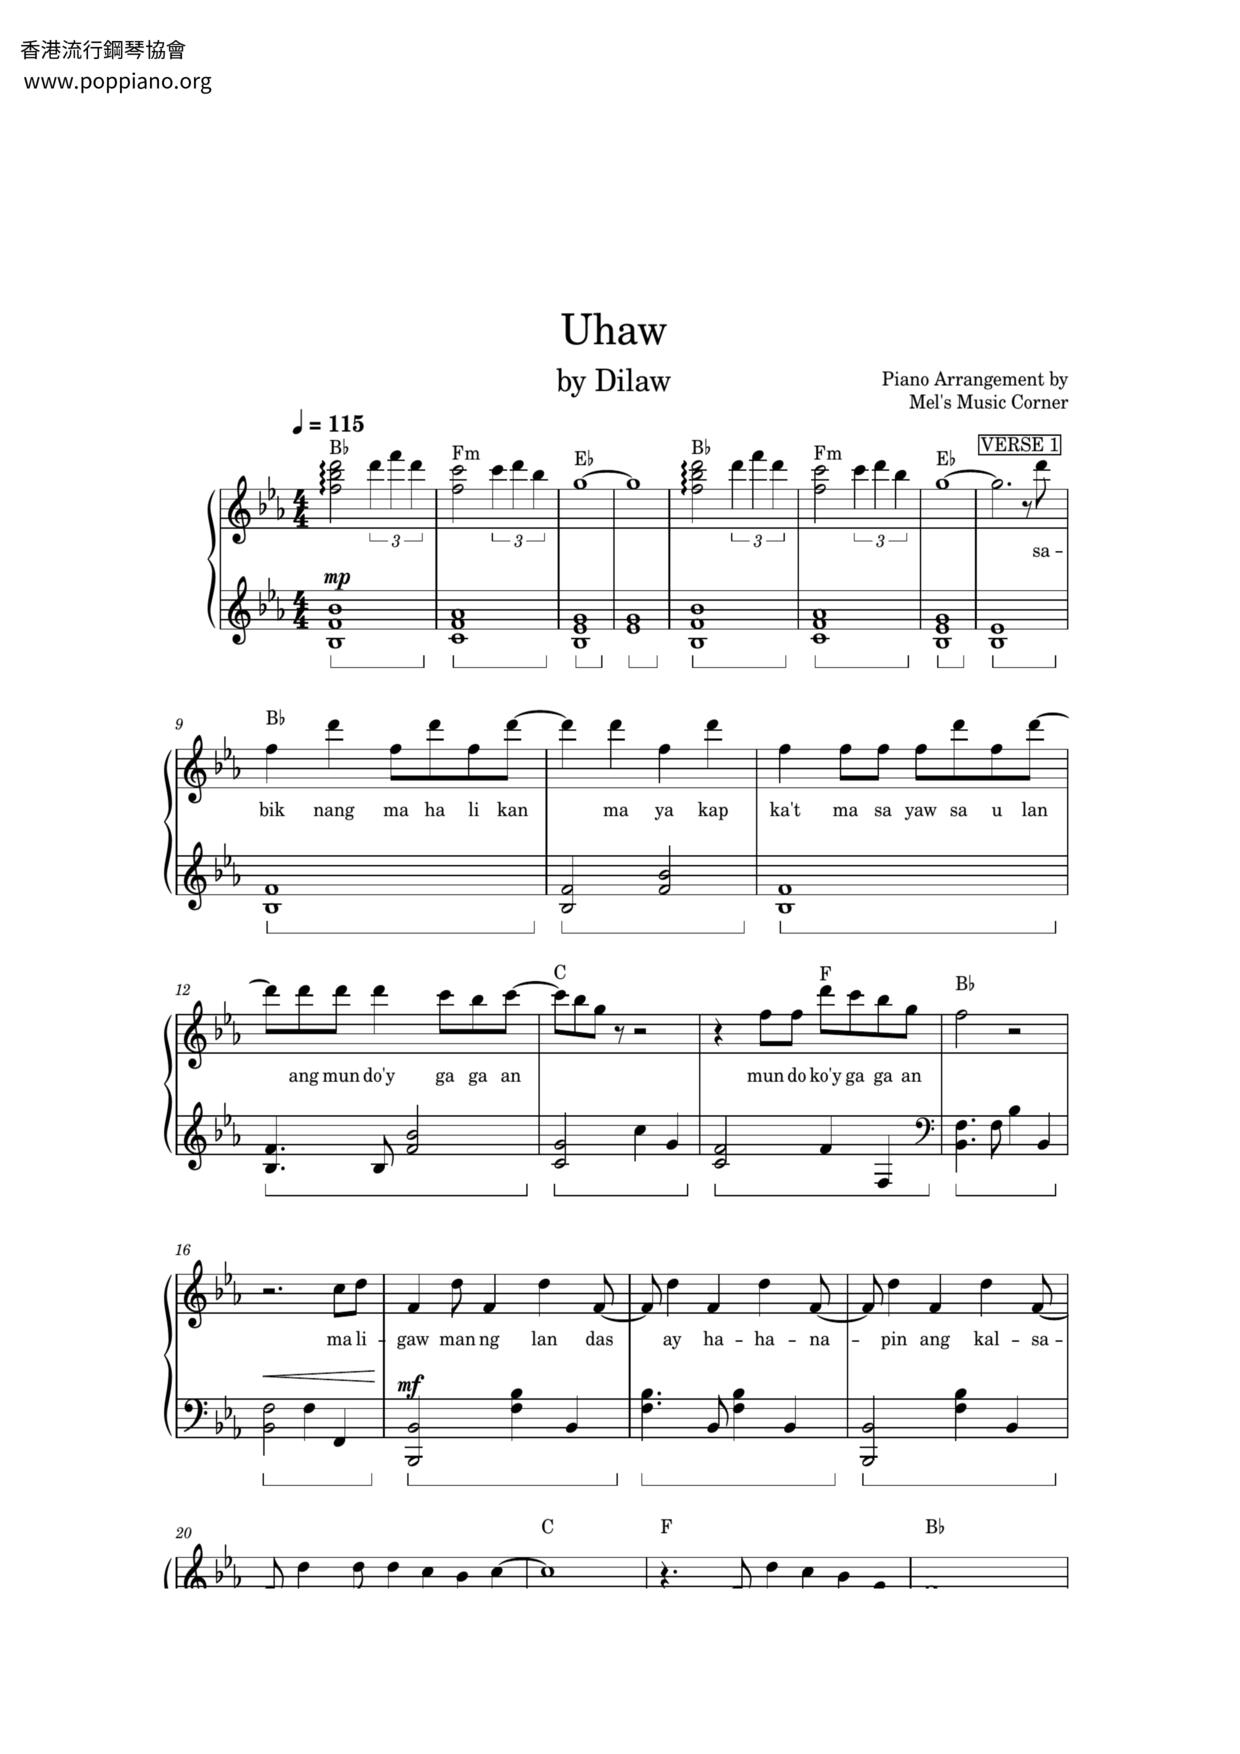 Uhawピアノ譜